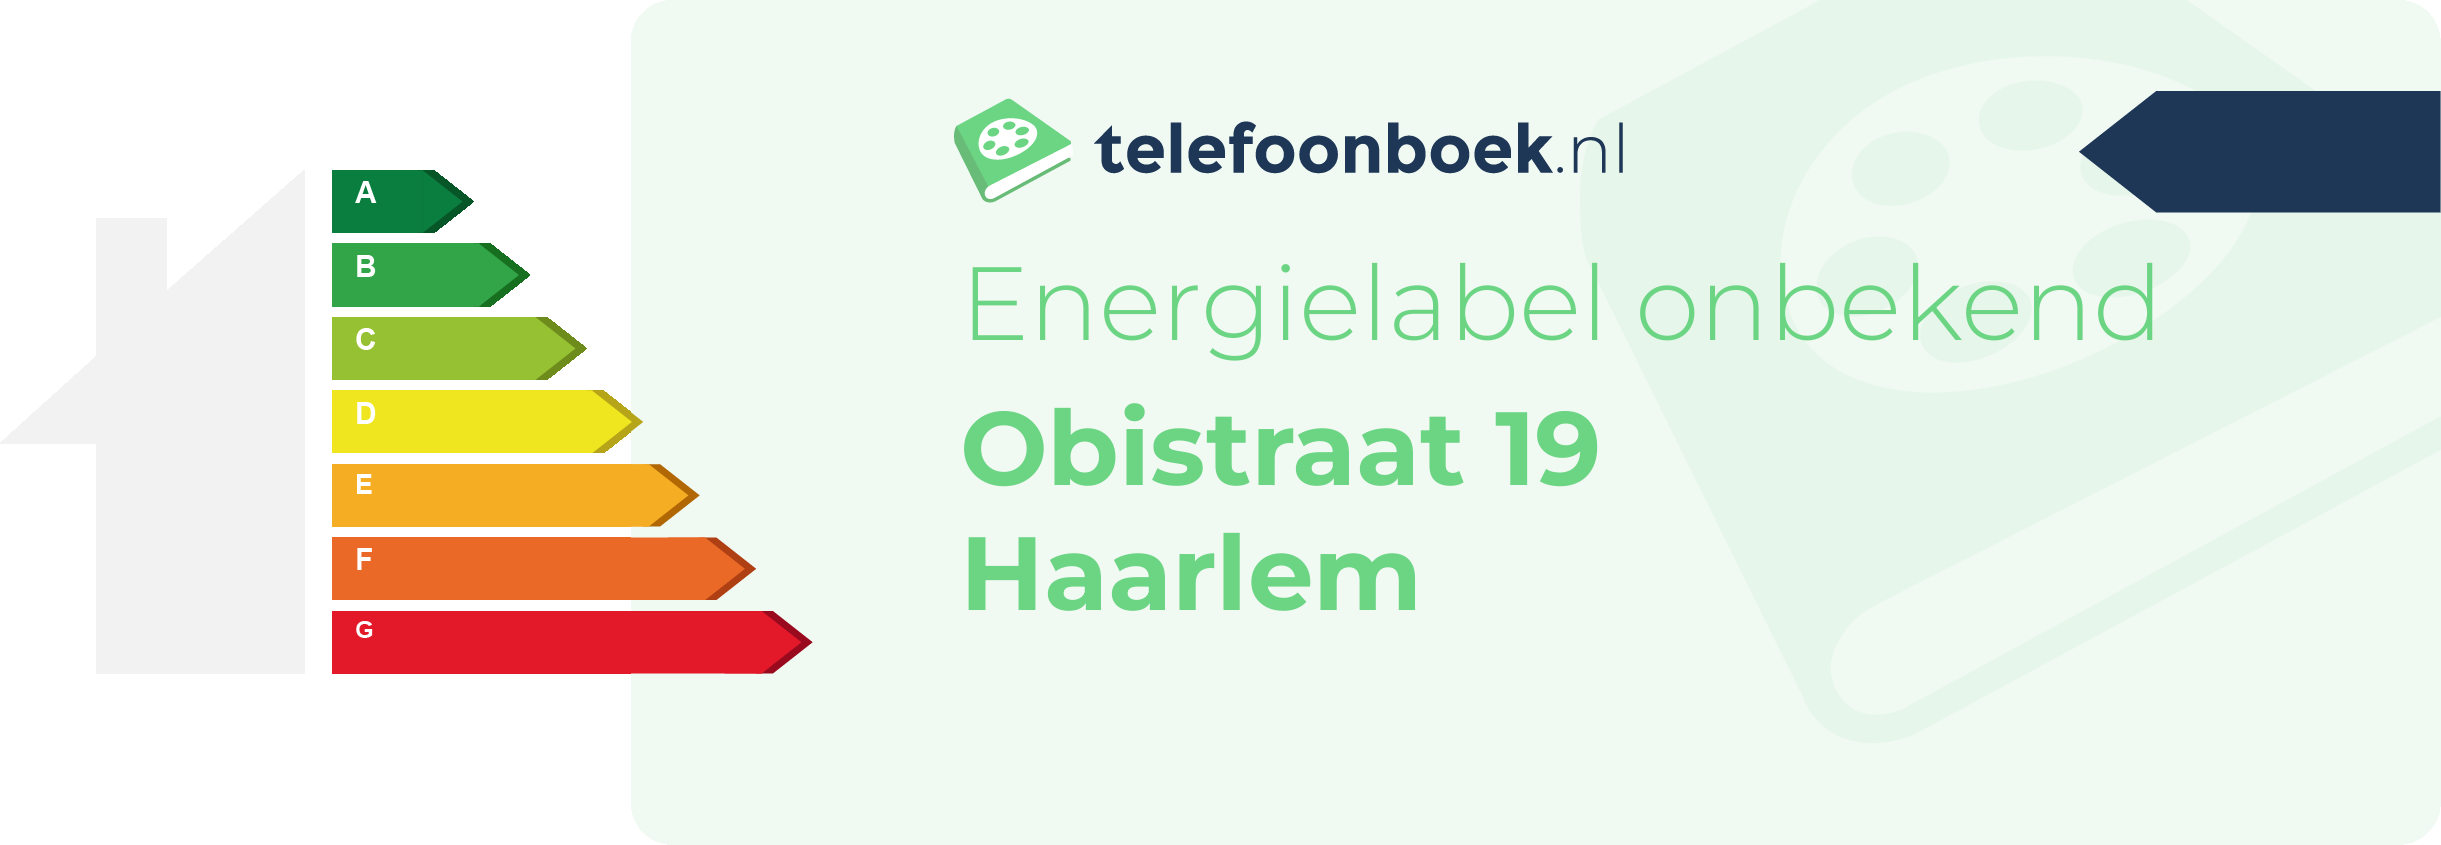 Energielabel Obistraat 19 Haarlem